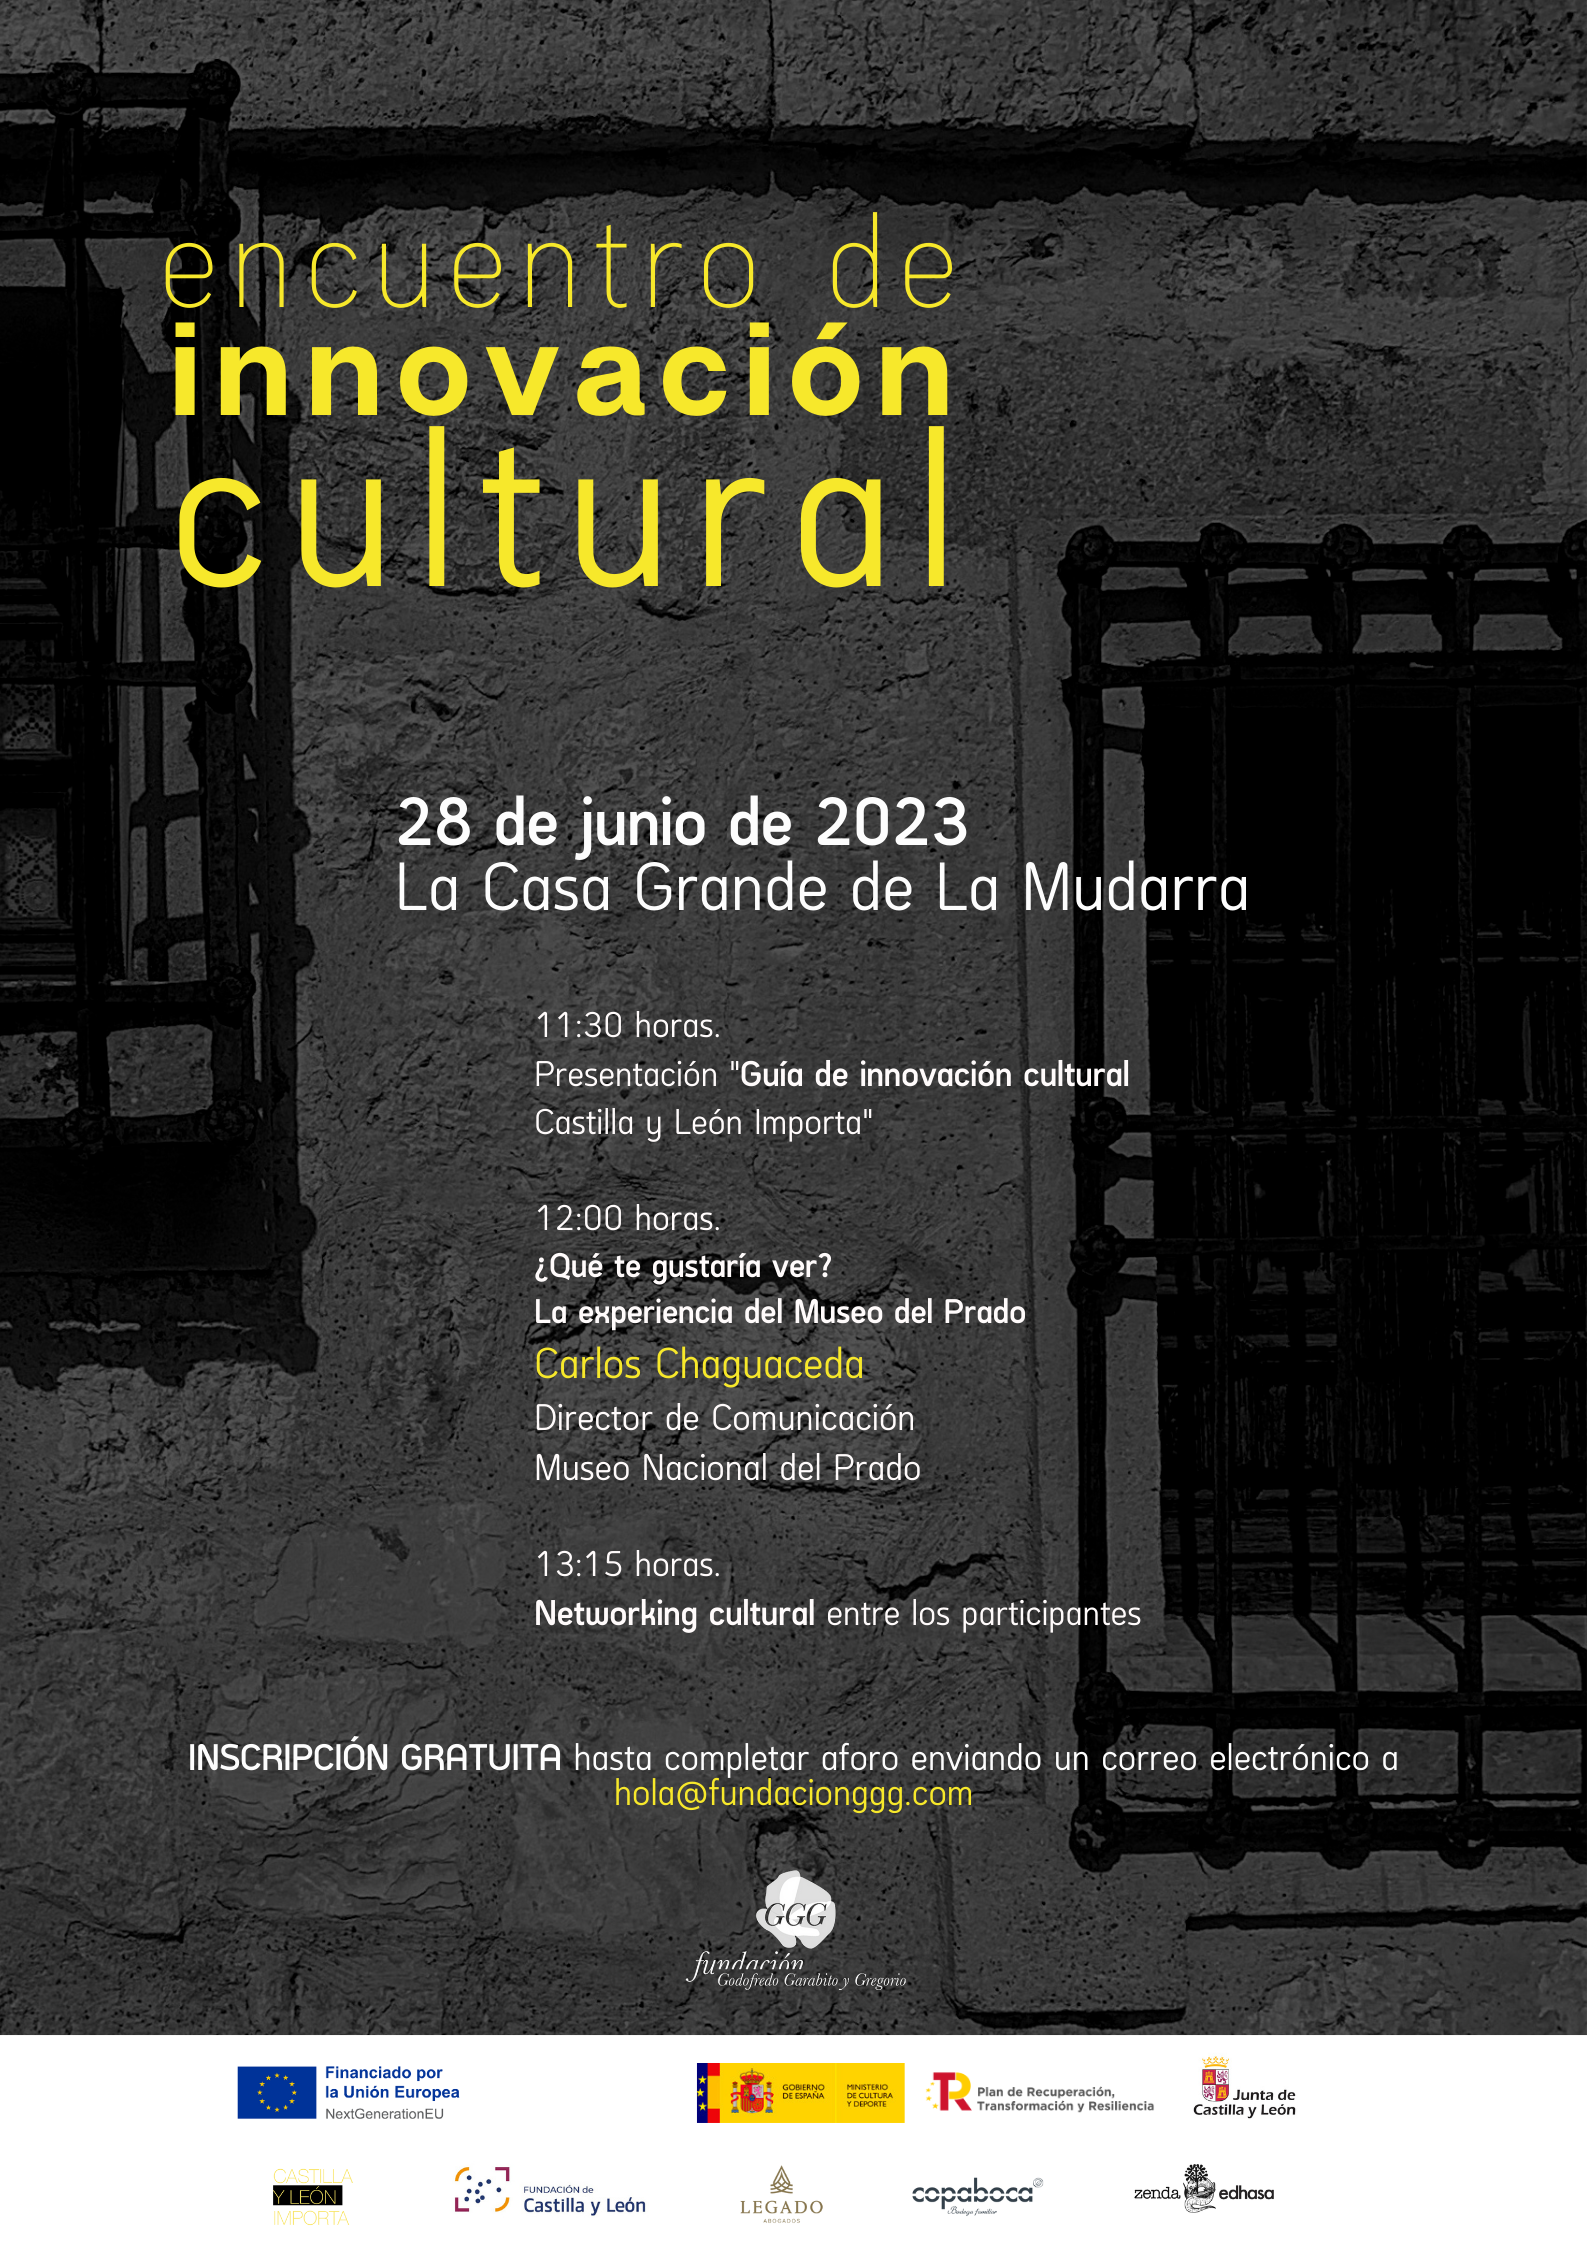 El director de Comunicación del Museo Nacional del Prado en el primer “Encuentro de innovación cultural Castilla y León Importa”